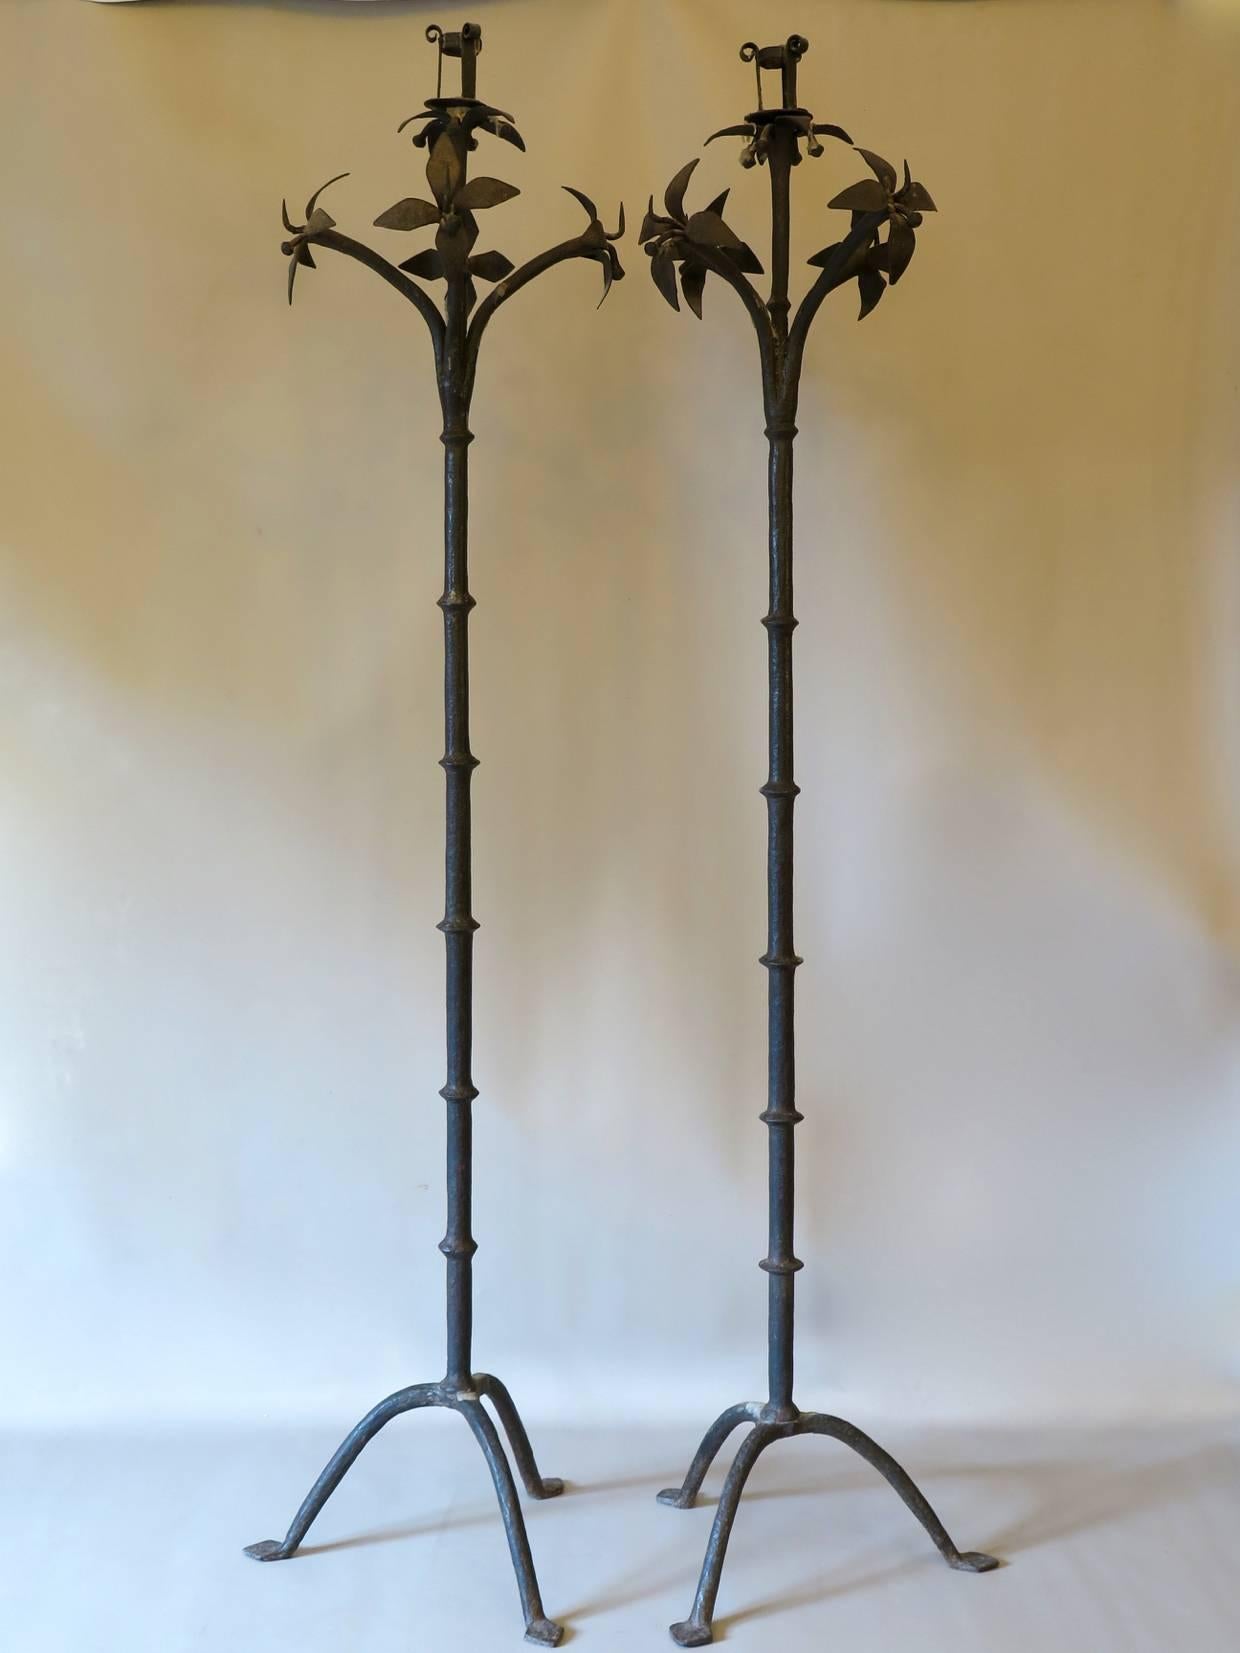 Elegantes und seltenes Paar schwerer schmiedeeiserner Kerzenhalter mit Blumenkranz auf einem dreibeinigen Sockel.
Wahrscheinlich aus Italien.